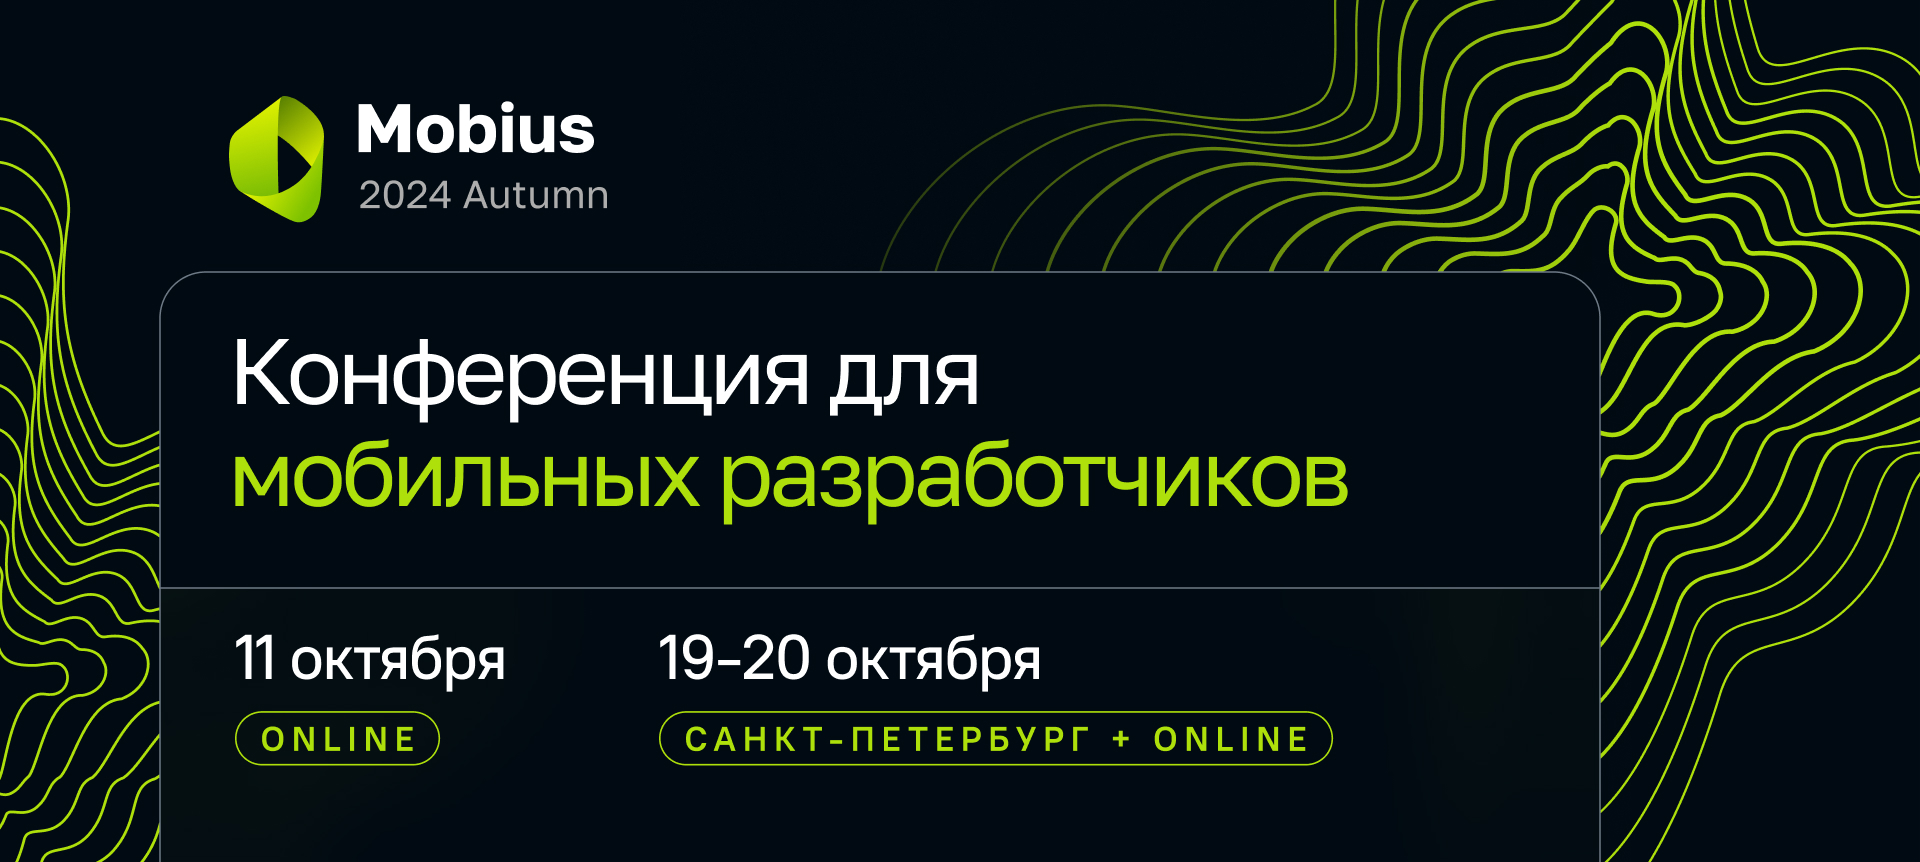 Обложка мероприятия Mobius 2024 Autumn Online